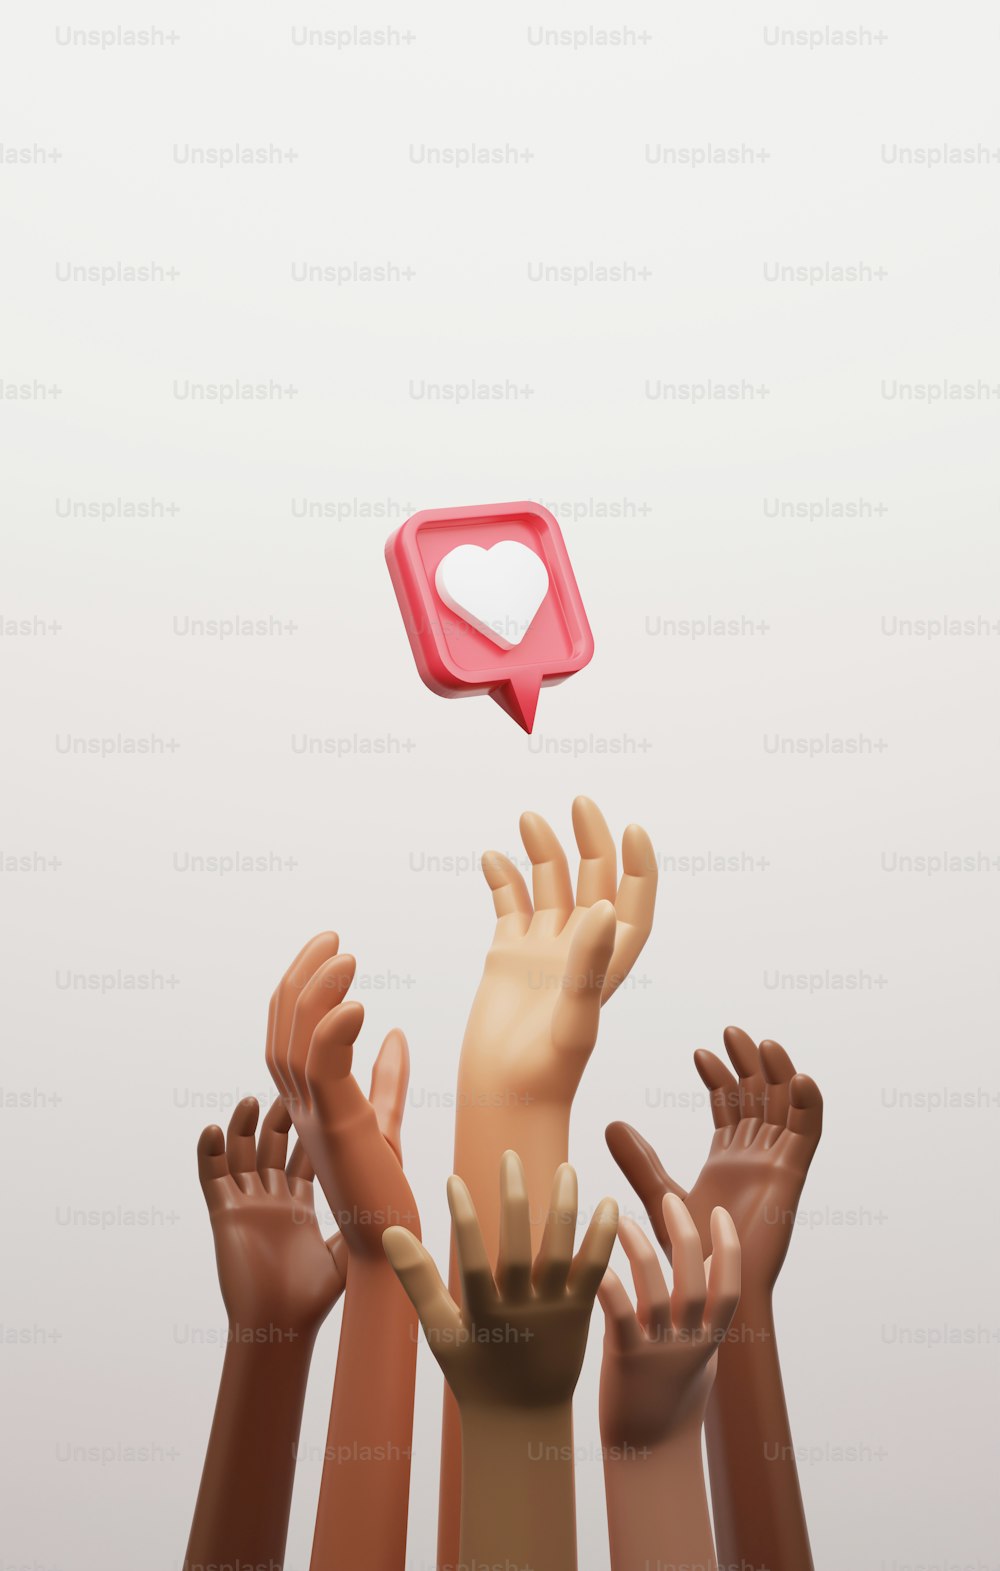 Un groupe multiethnique tend la main à l’icône du cœur sur une épingle rouge
Fame Compétition et acceptation sur les médias sociaux. Illustration de rendu 3D.